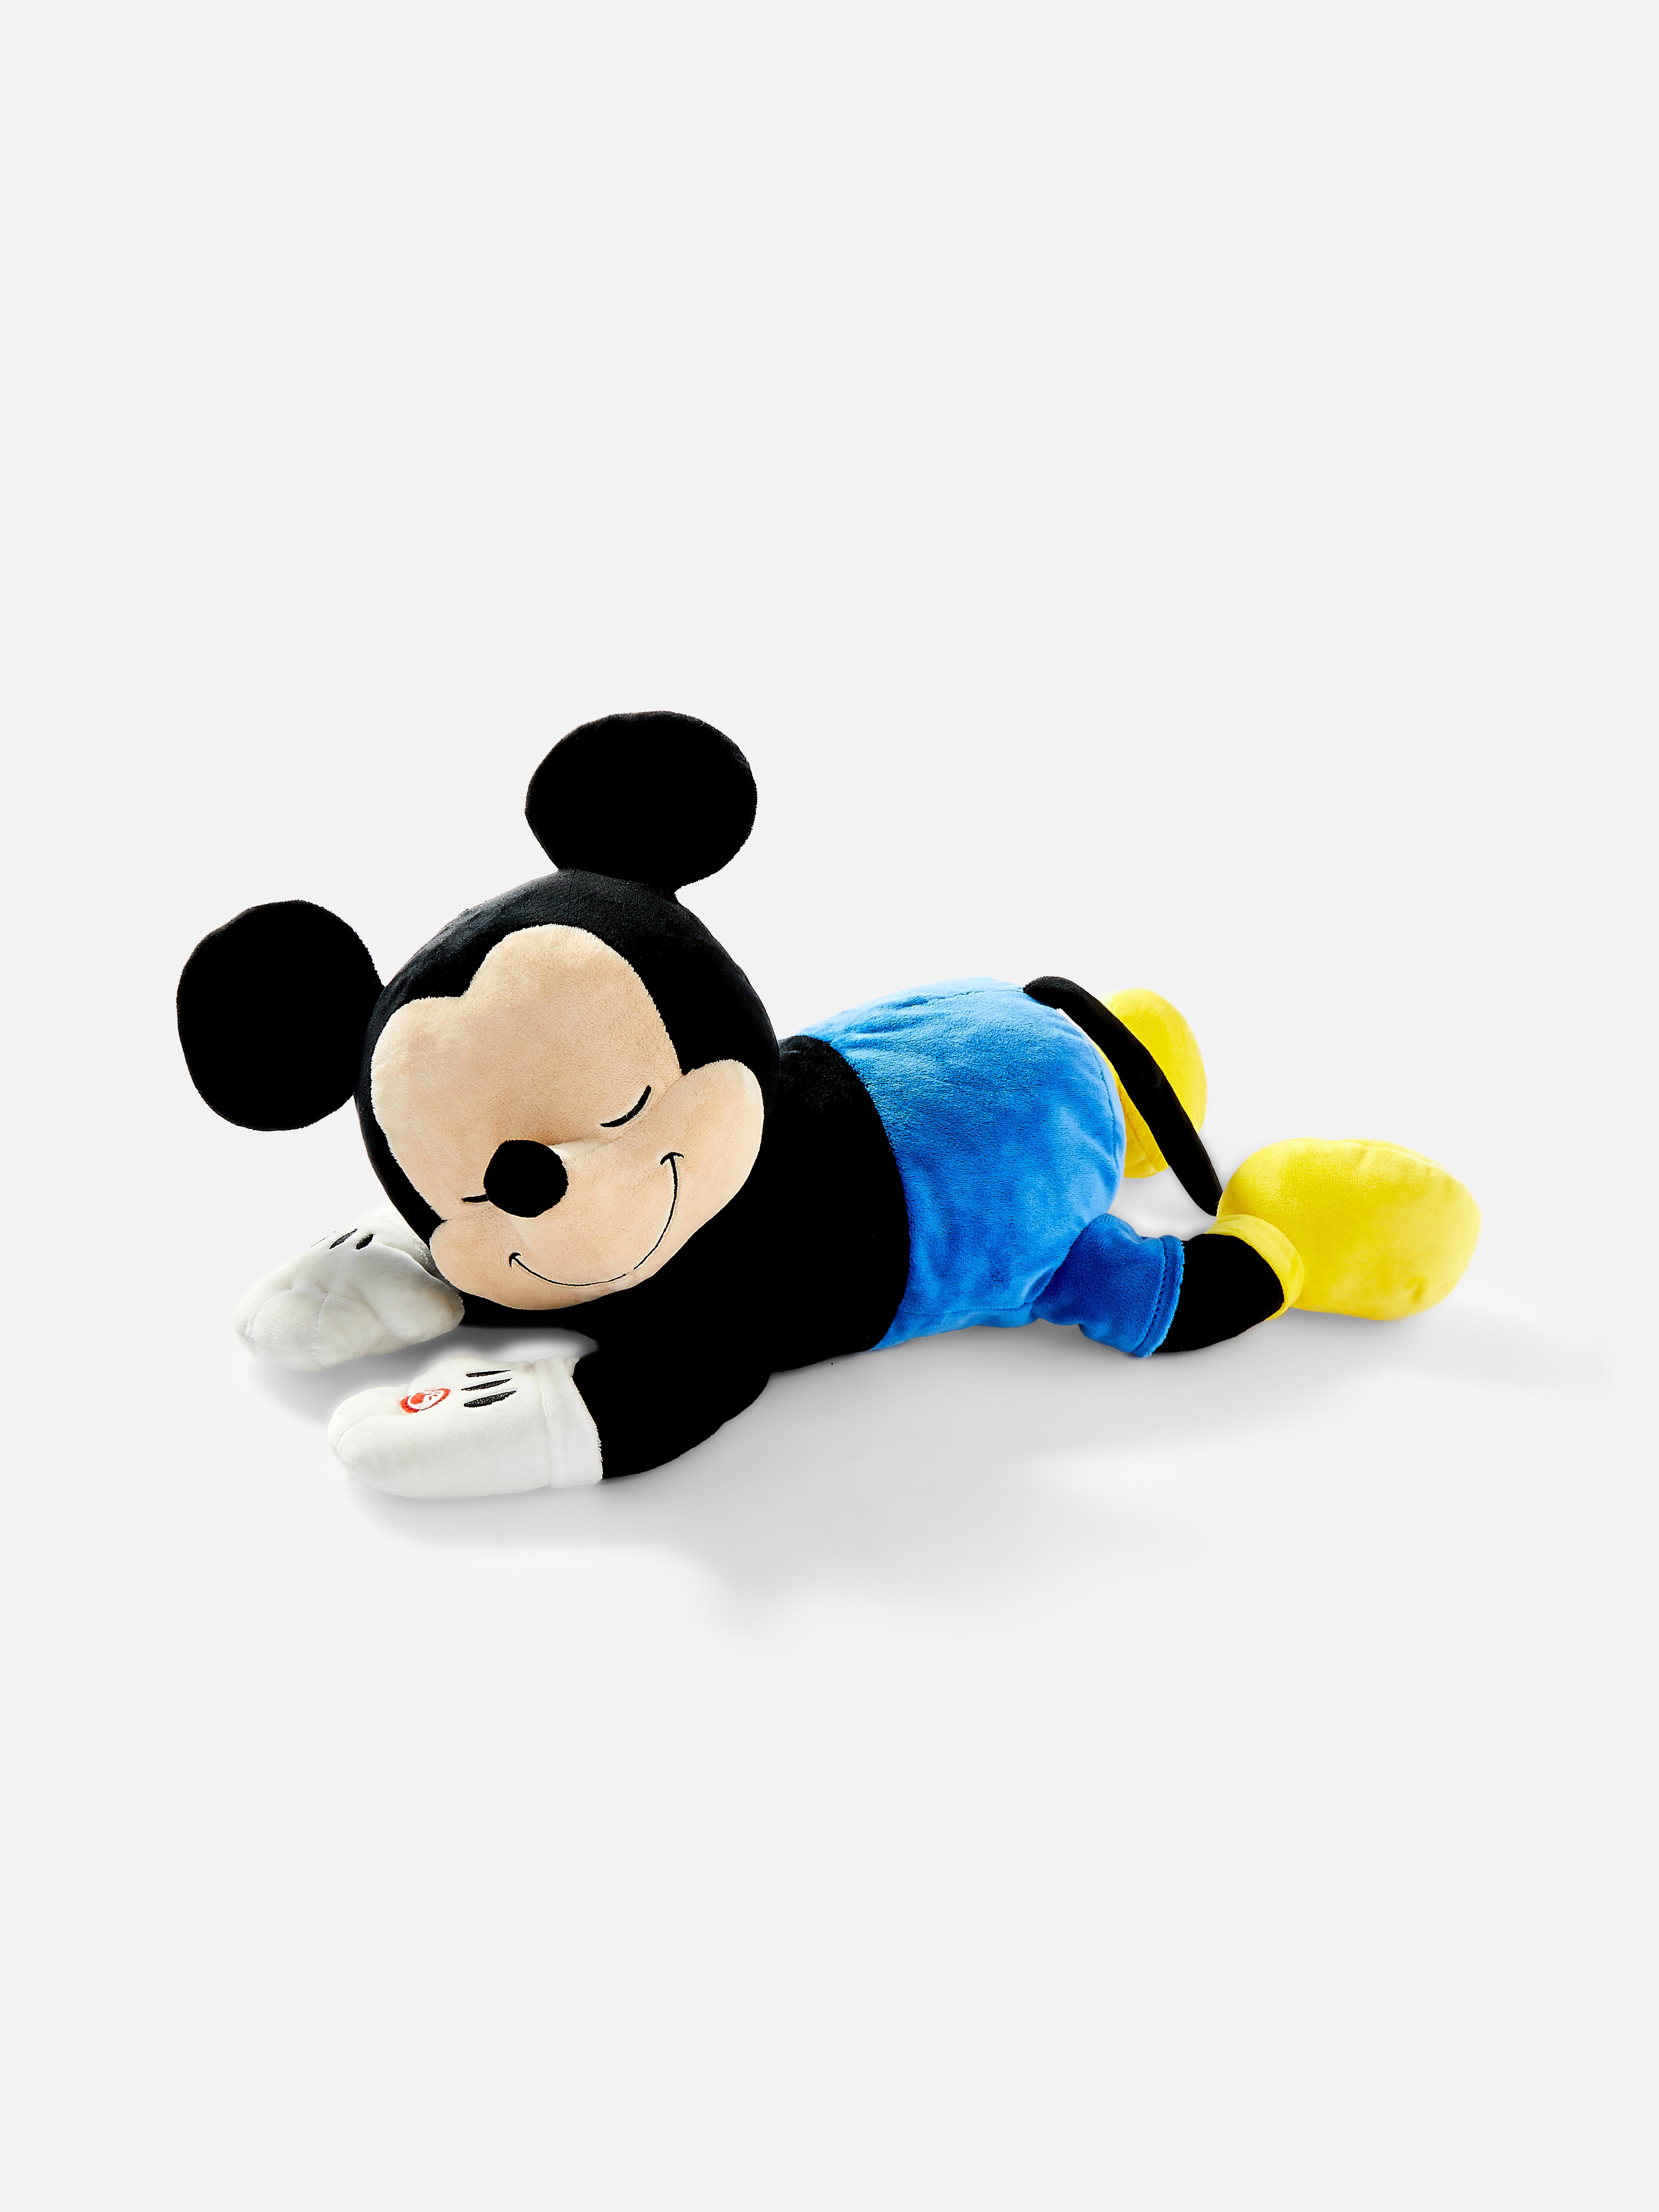 Disney Plush Sleeping Mickey Mouse Toy